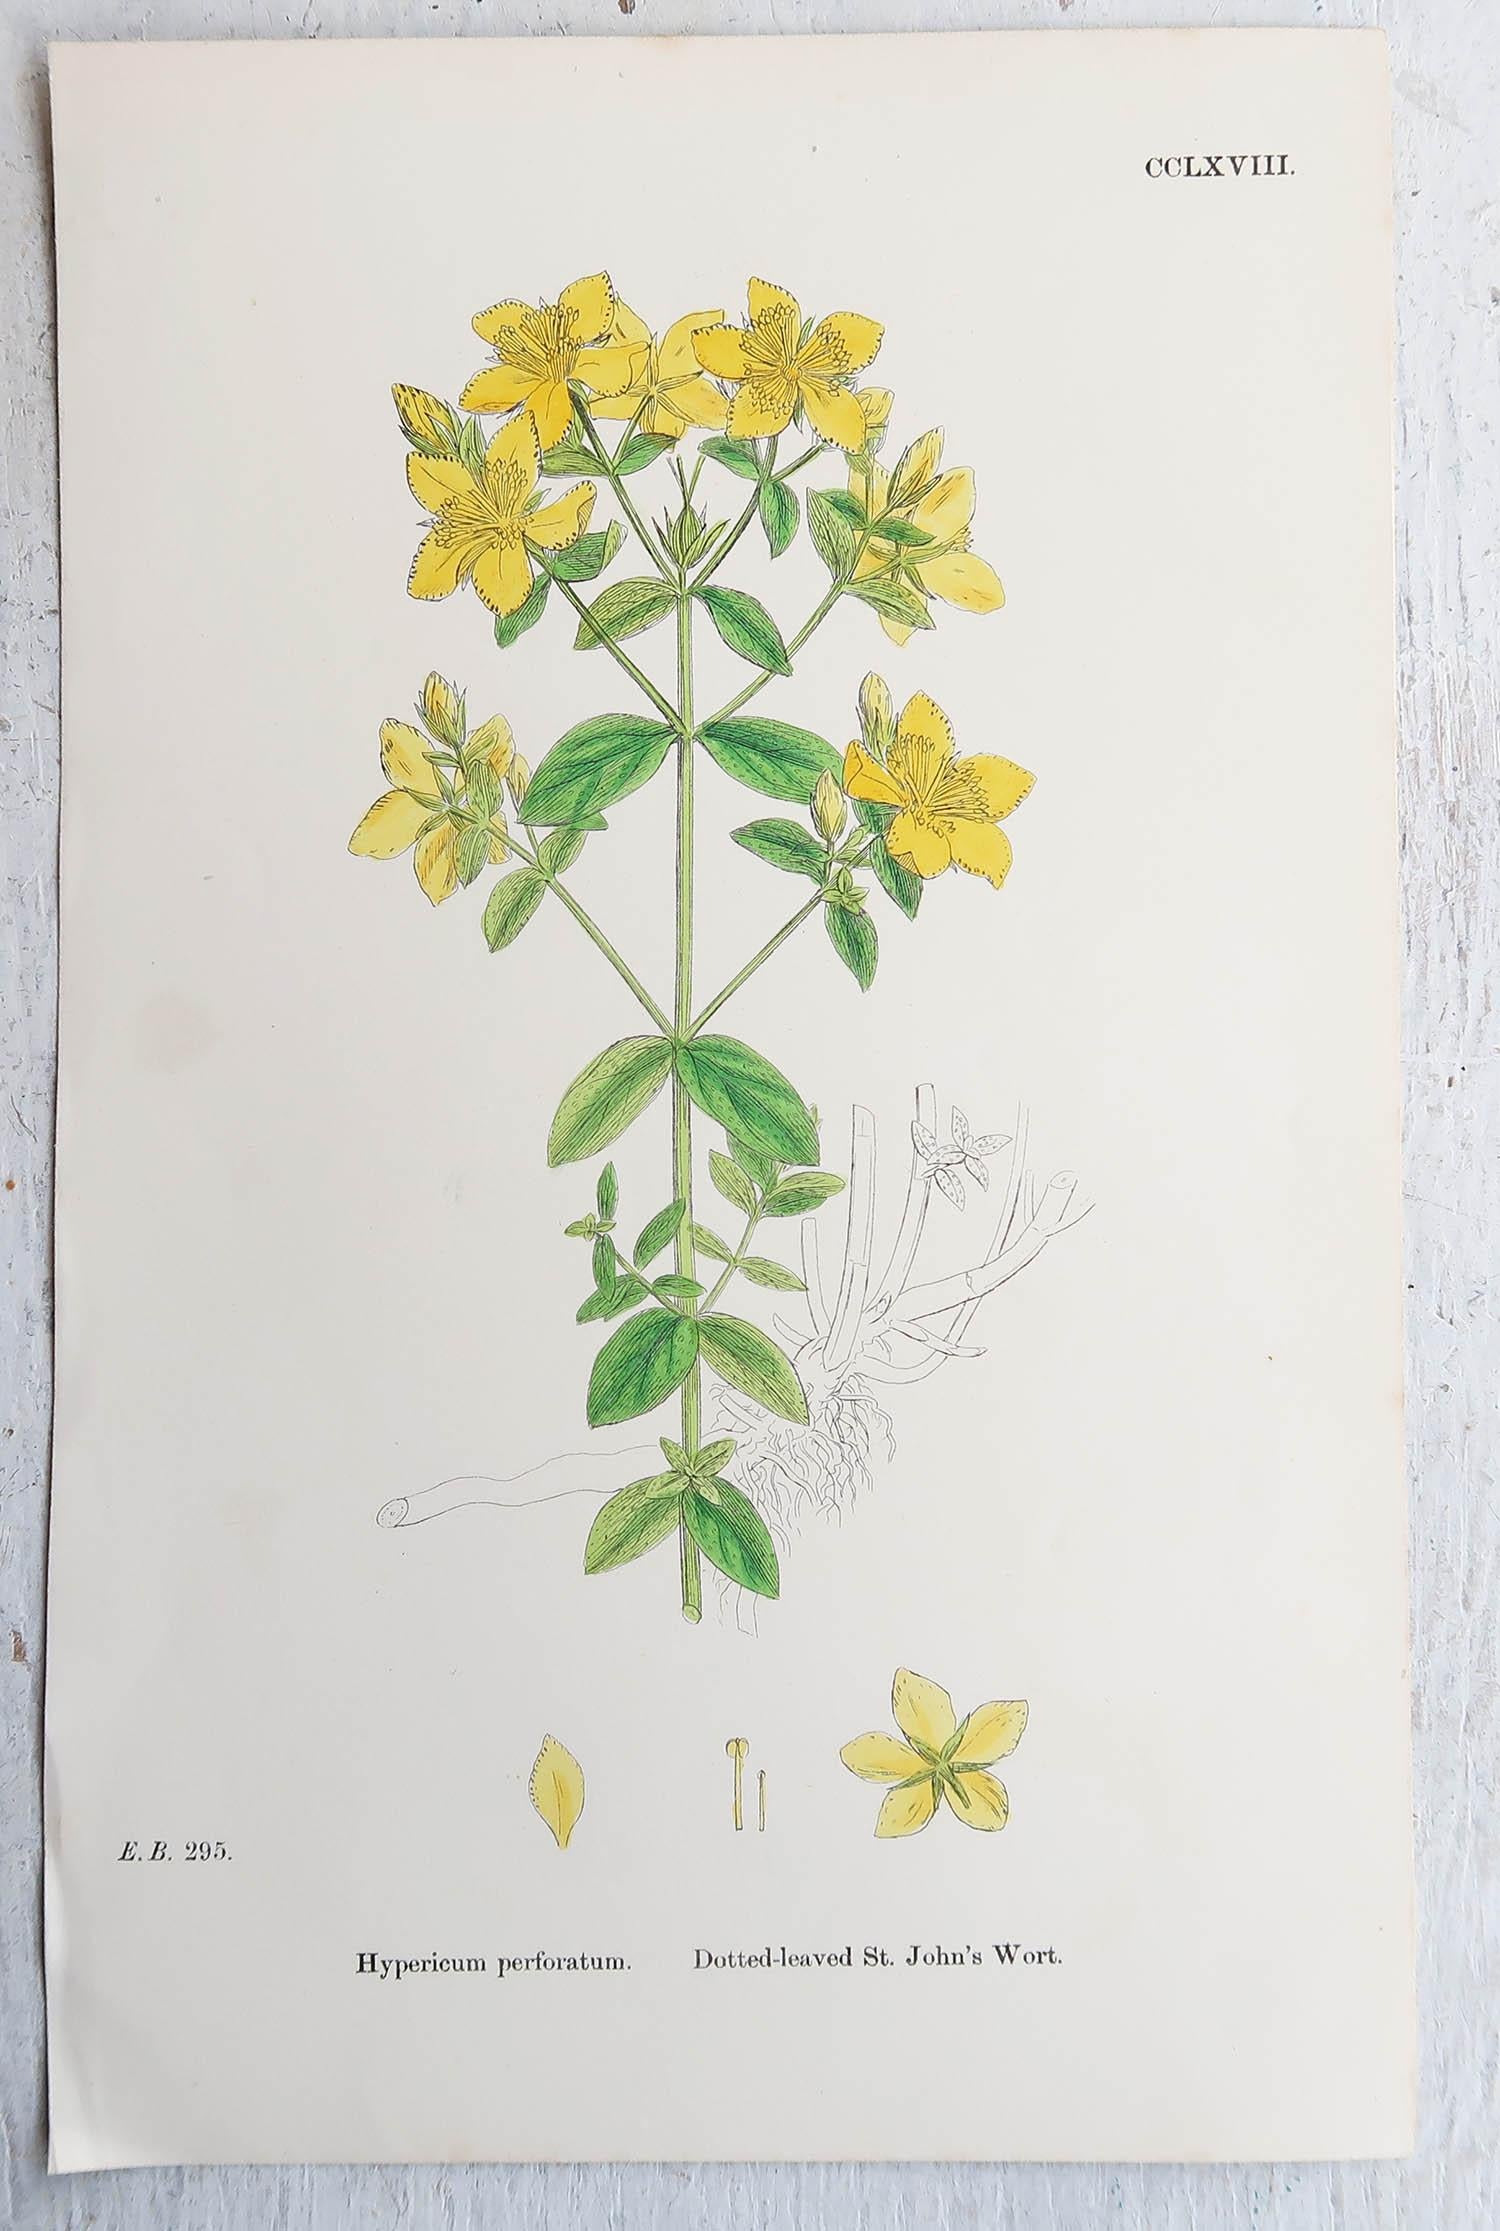 Wunderschöner Satz von 16 botanischen Drucken

Lithographien nach den botanischen Originalzeichnungen von Hooker.

Original Farbe

Veröffentlicht, um 1850

Ungerahmt.

Die angegebenen Maße beziehen sich auf einen Druck.

